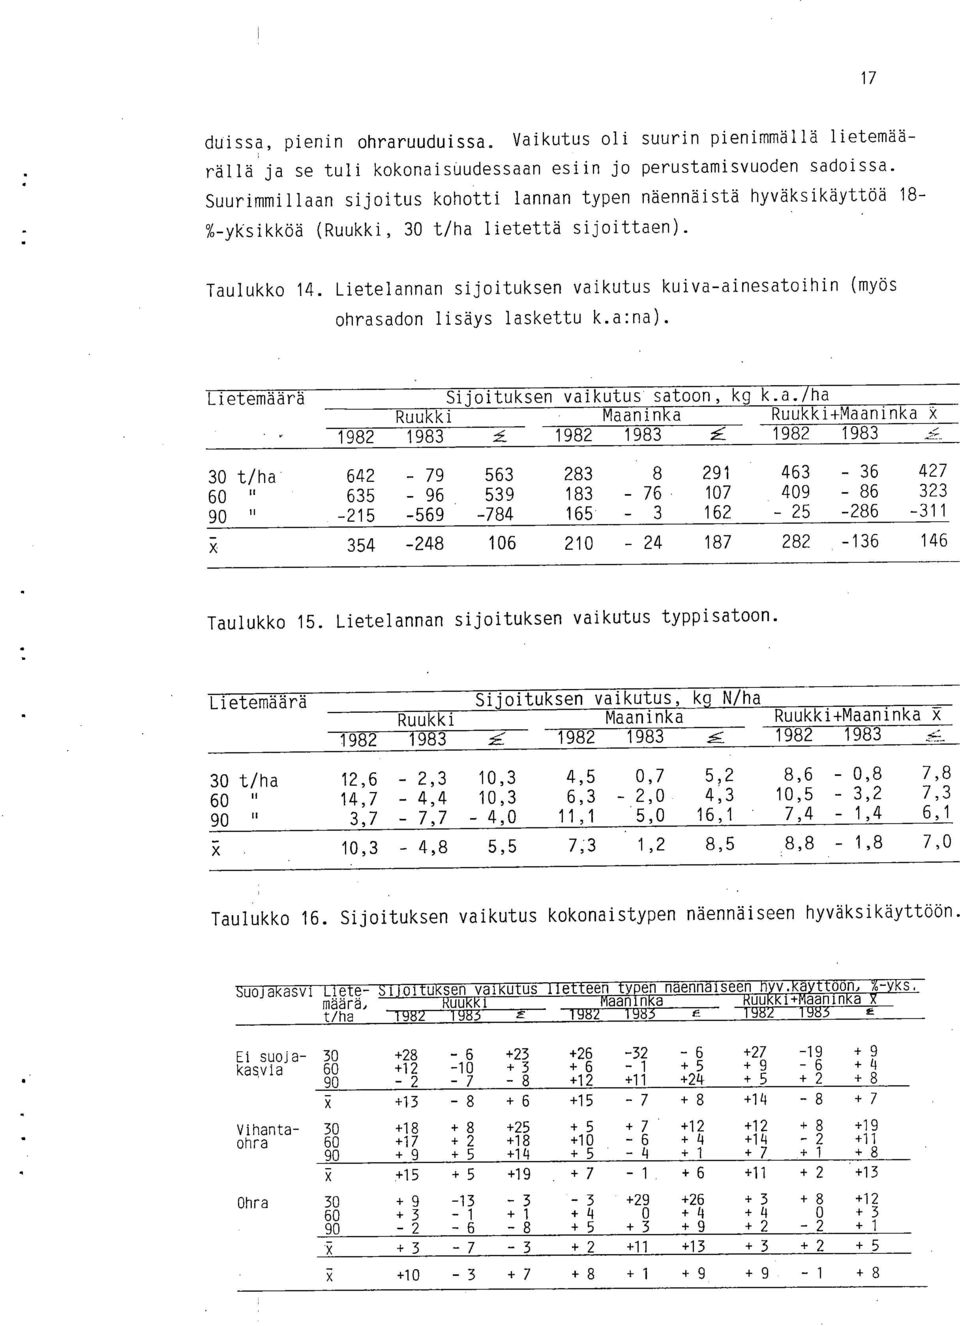 Lietelannan sijoituksen vaikutus kuiva-ainesatoihin (myös ohrasadon lisäys laskettu k.a:na). Lietemäärä Sijoituksen vaikutus satoon, kg k.a./ha Ruukki Maaninka Ruukki+Maaninka X 1982 1983.5.